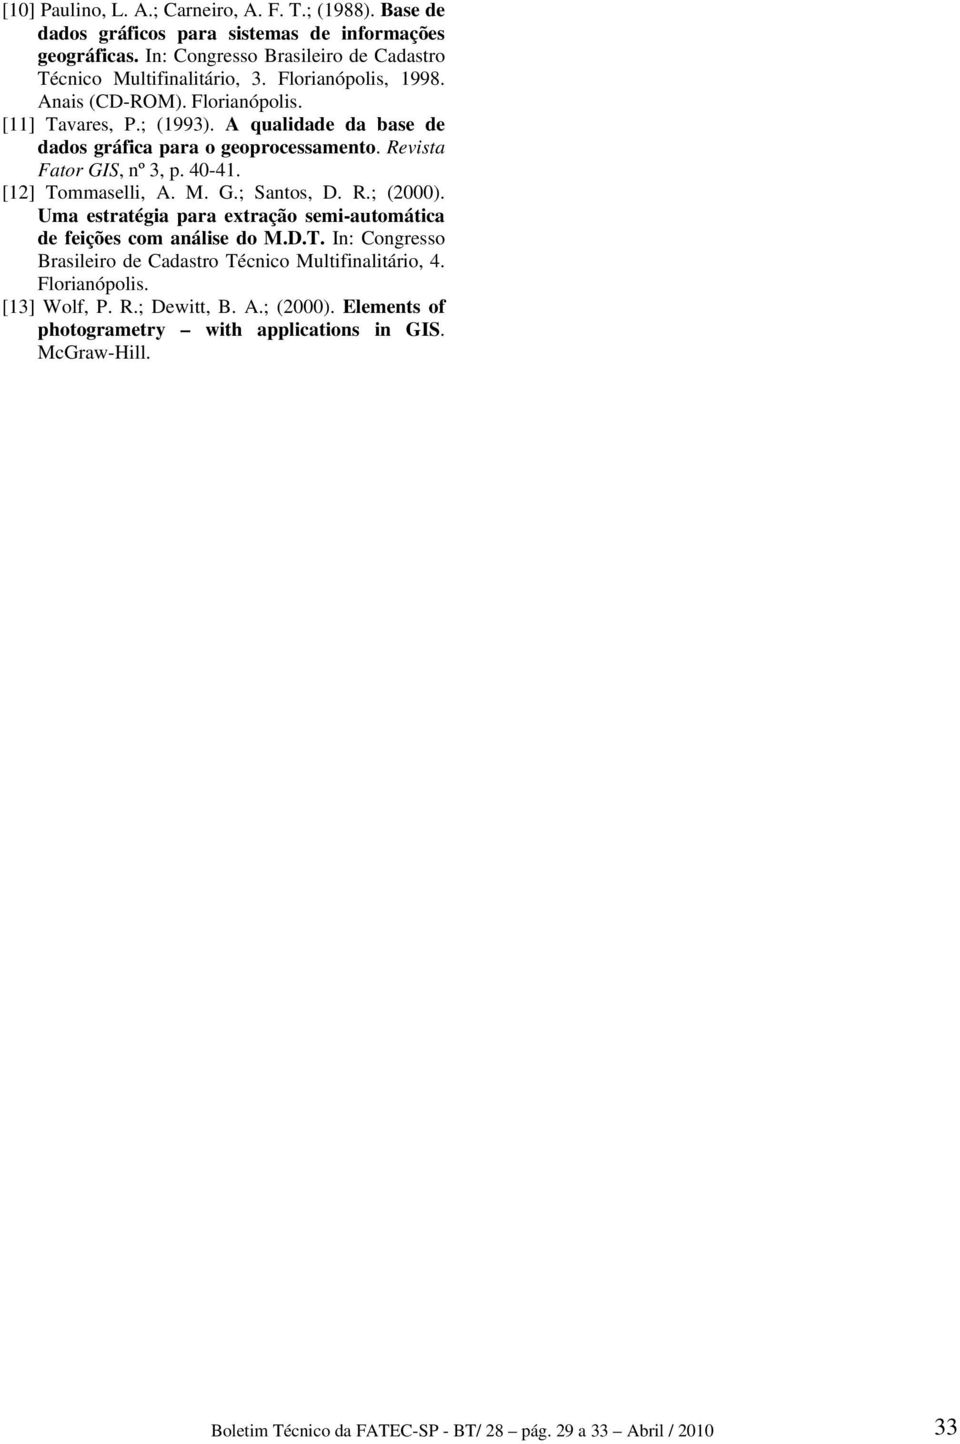 [12] Tommaselli, A. M. G.; Santos, D. R.; (2000). Uma estratégia para extração semi-automática de feições com análise do M.D.T. In: Congresso Brasileiro de Cadastro Técnico Multifinalitário, 4.